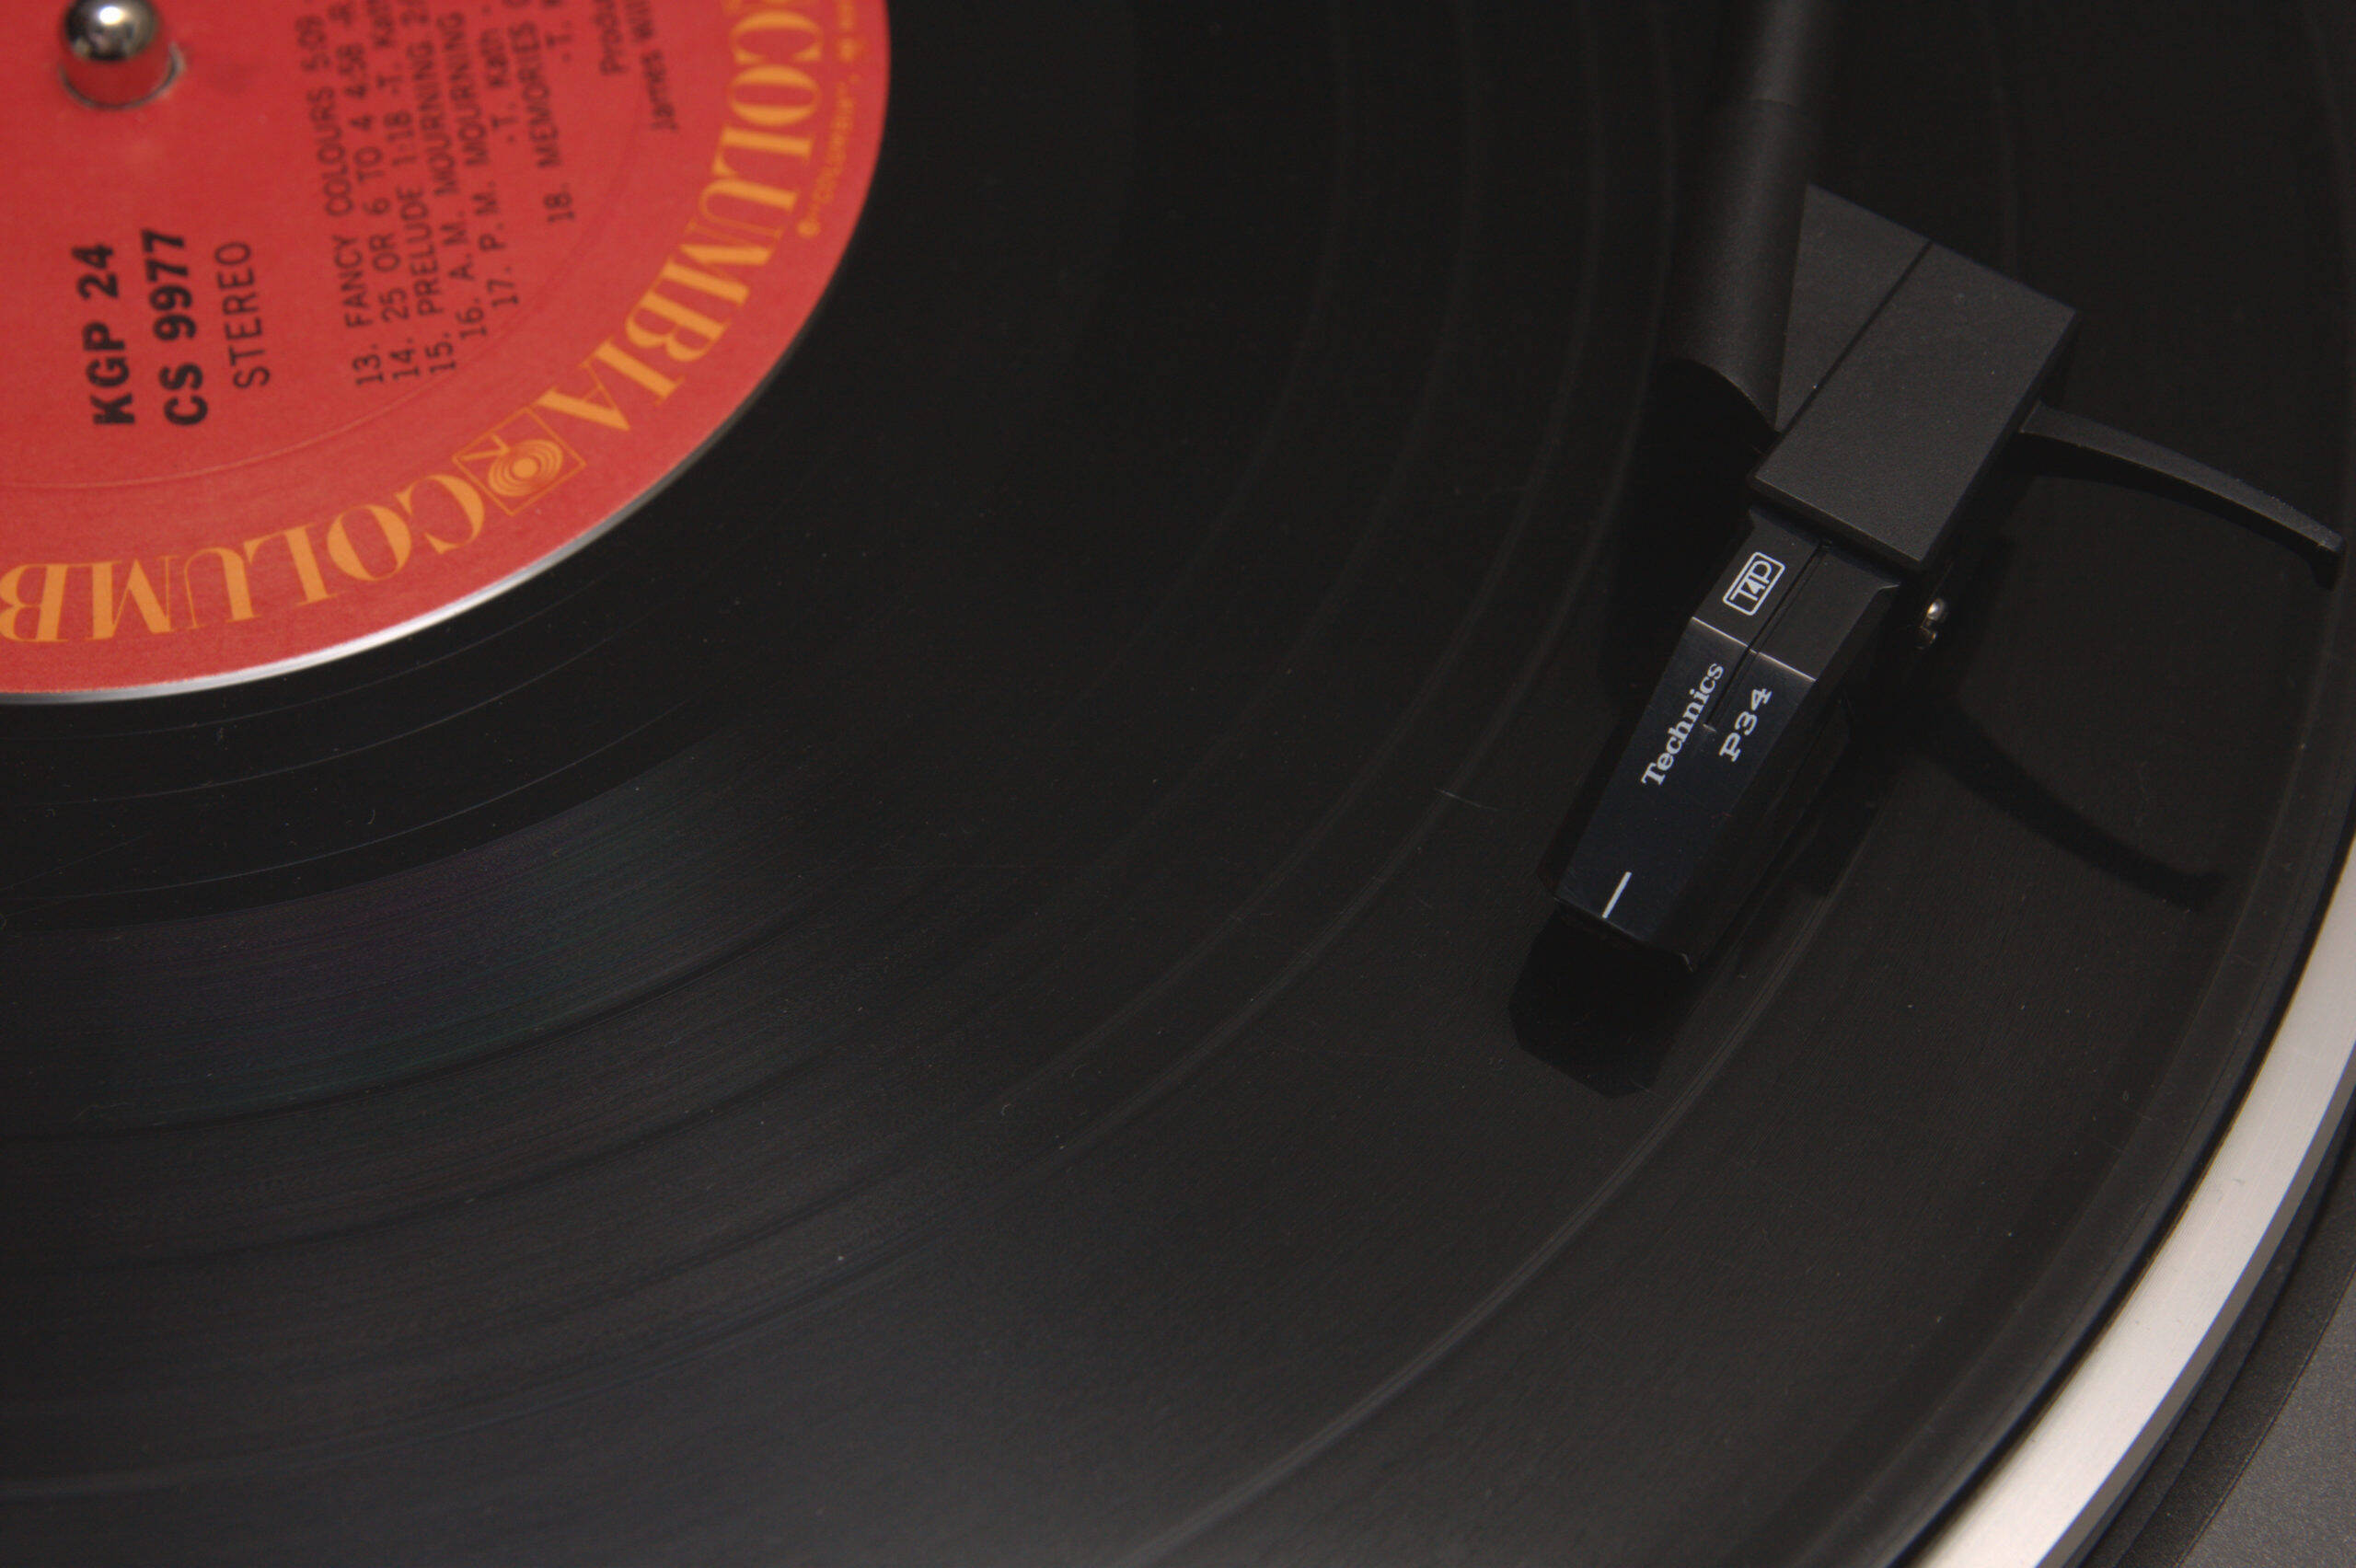 Vendas de discos de vinil superam a de CDs pela primeira vez desde os anos 1980